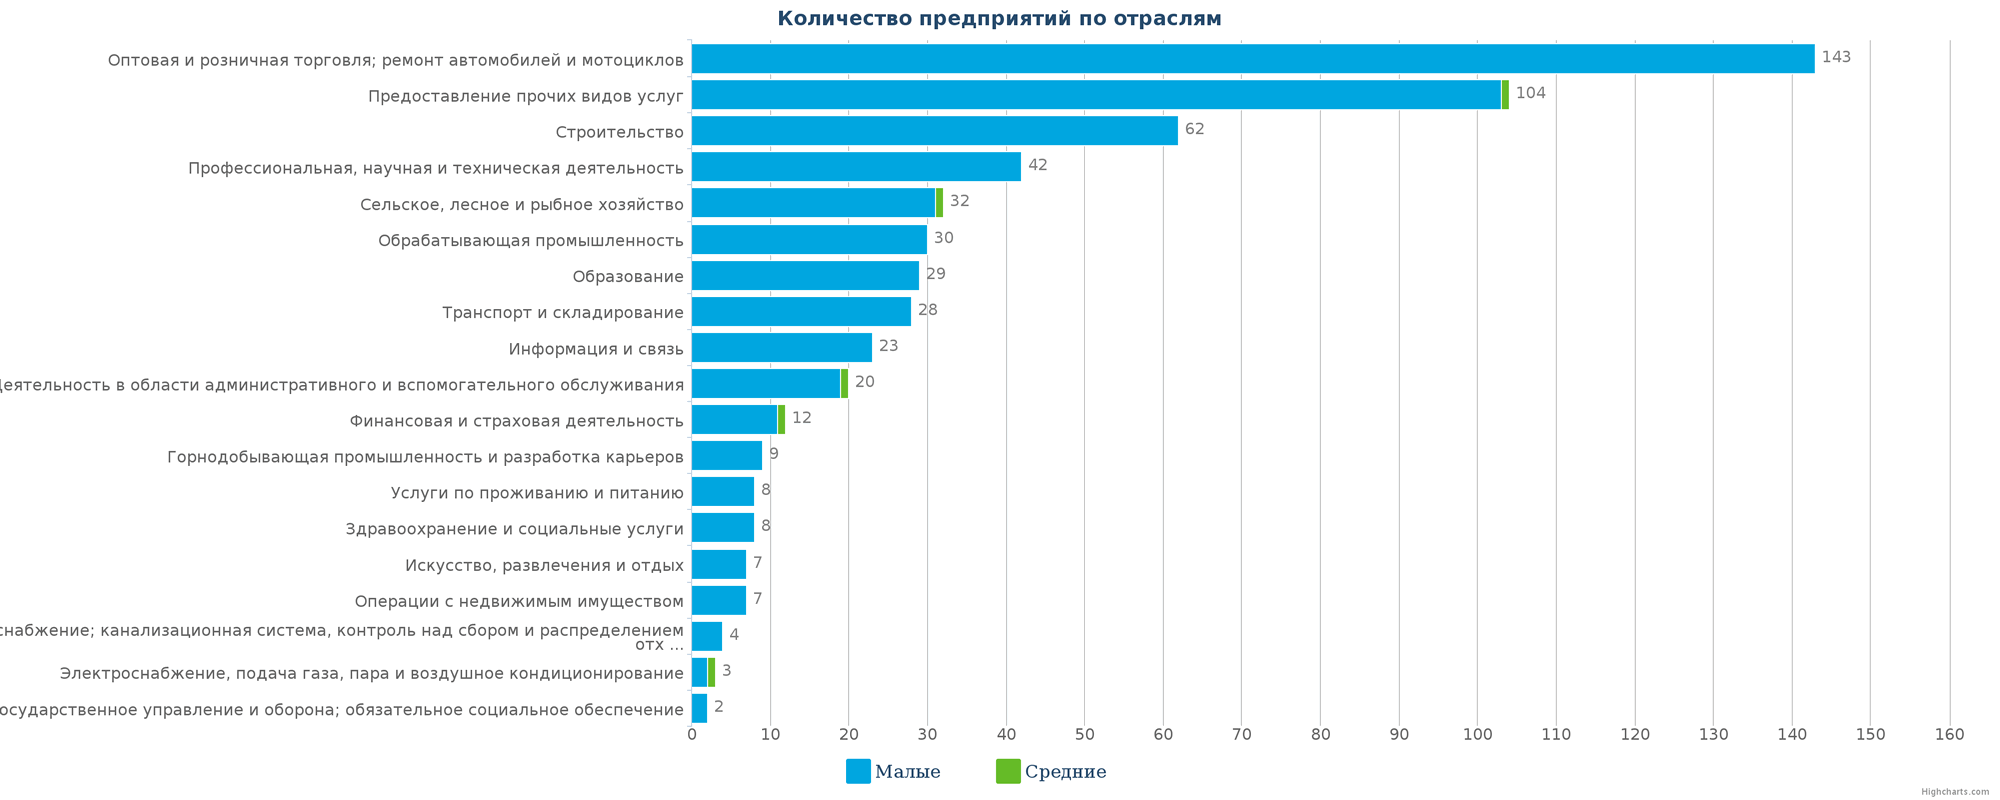 Новые компании в базе данных Казахстана